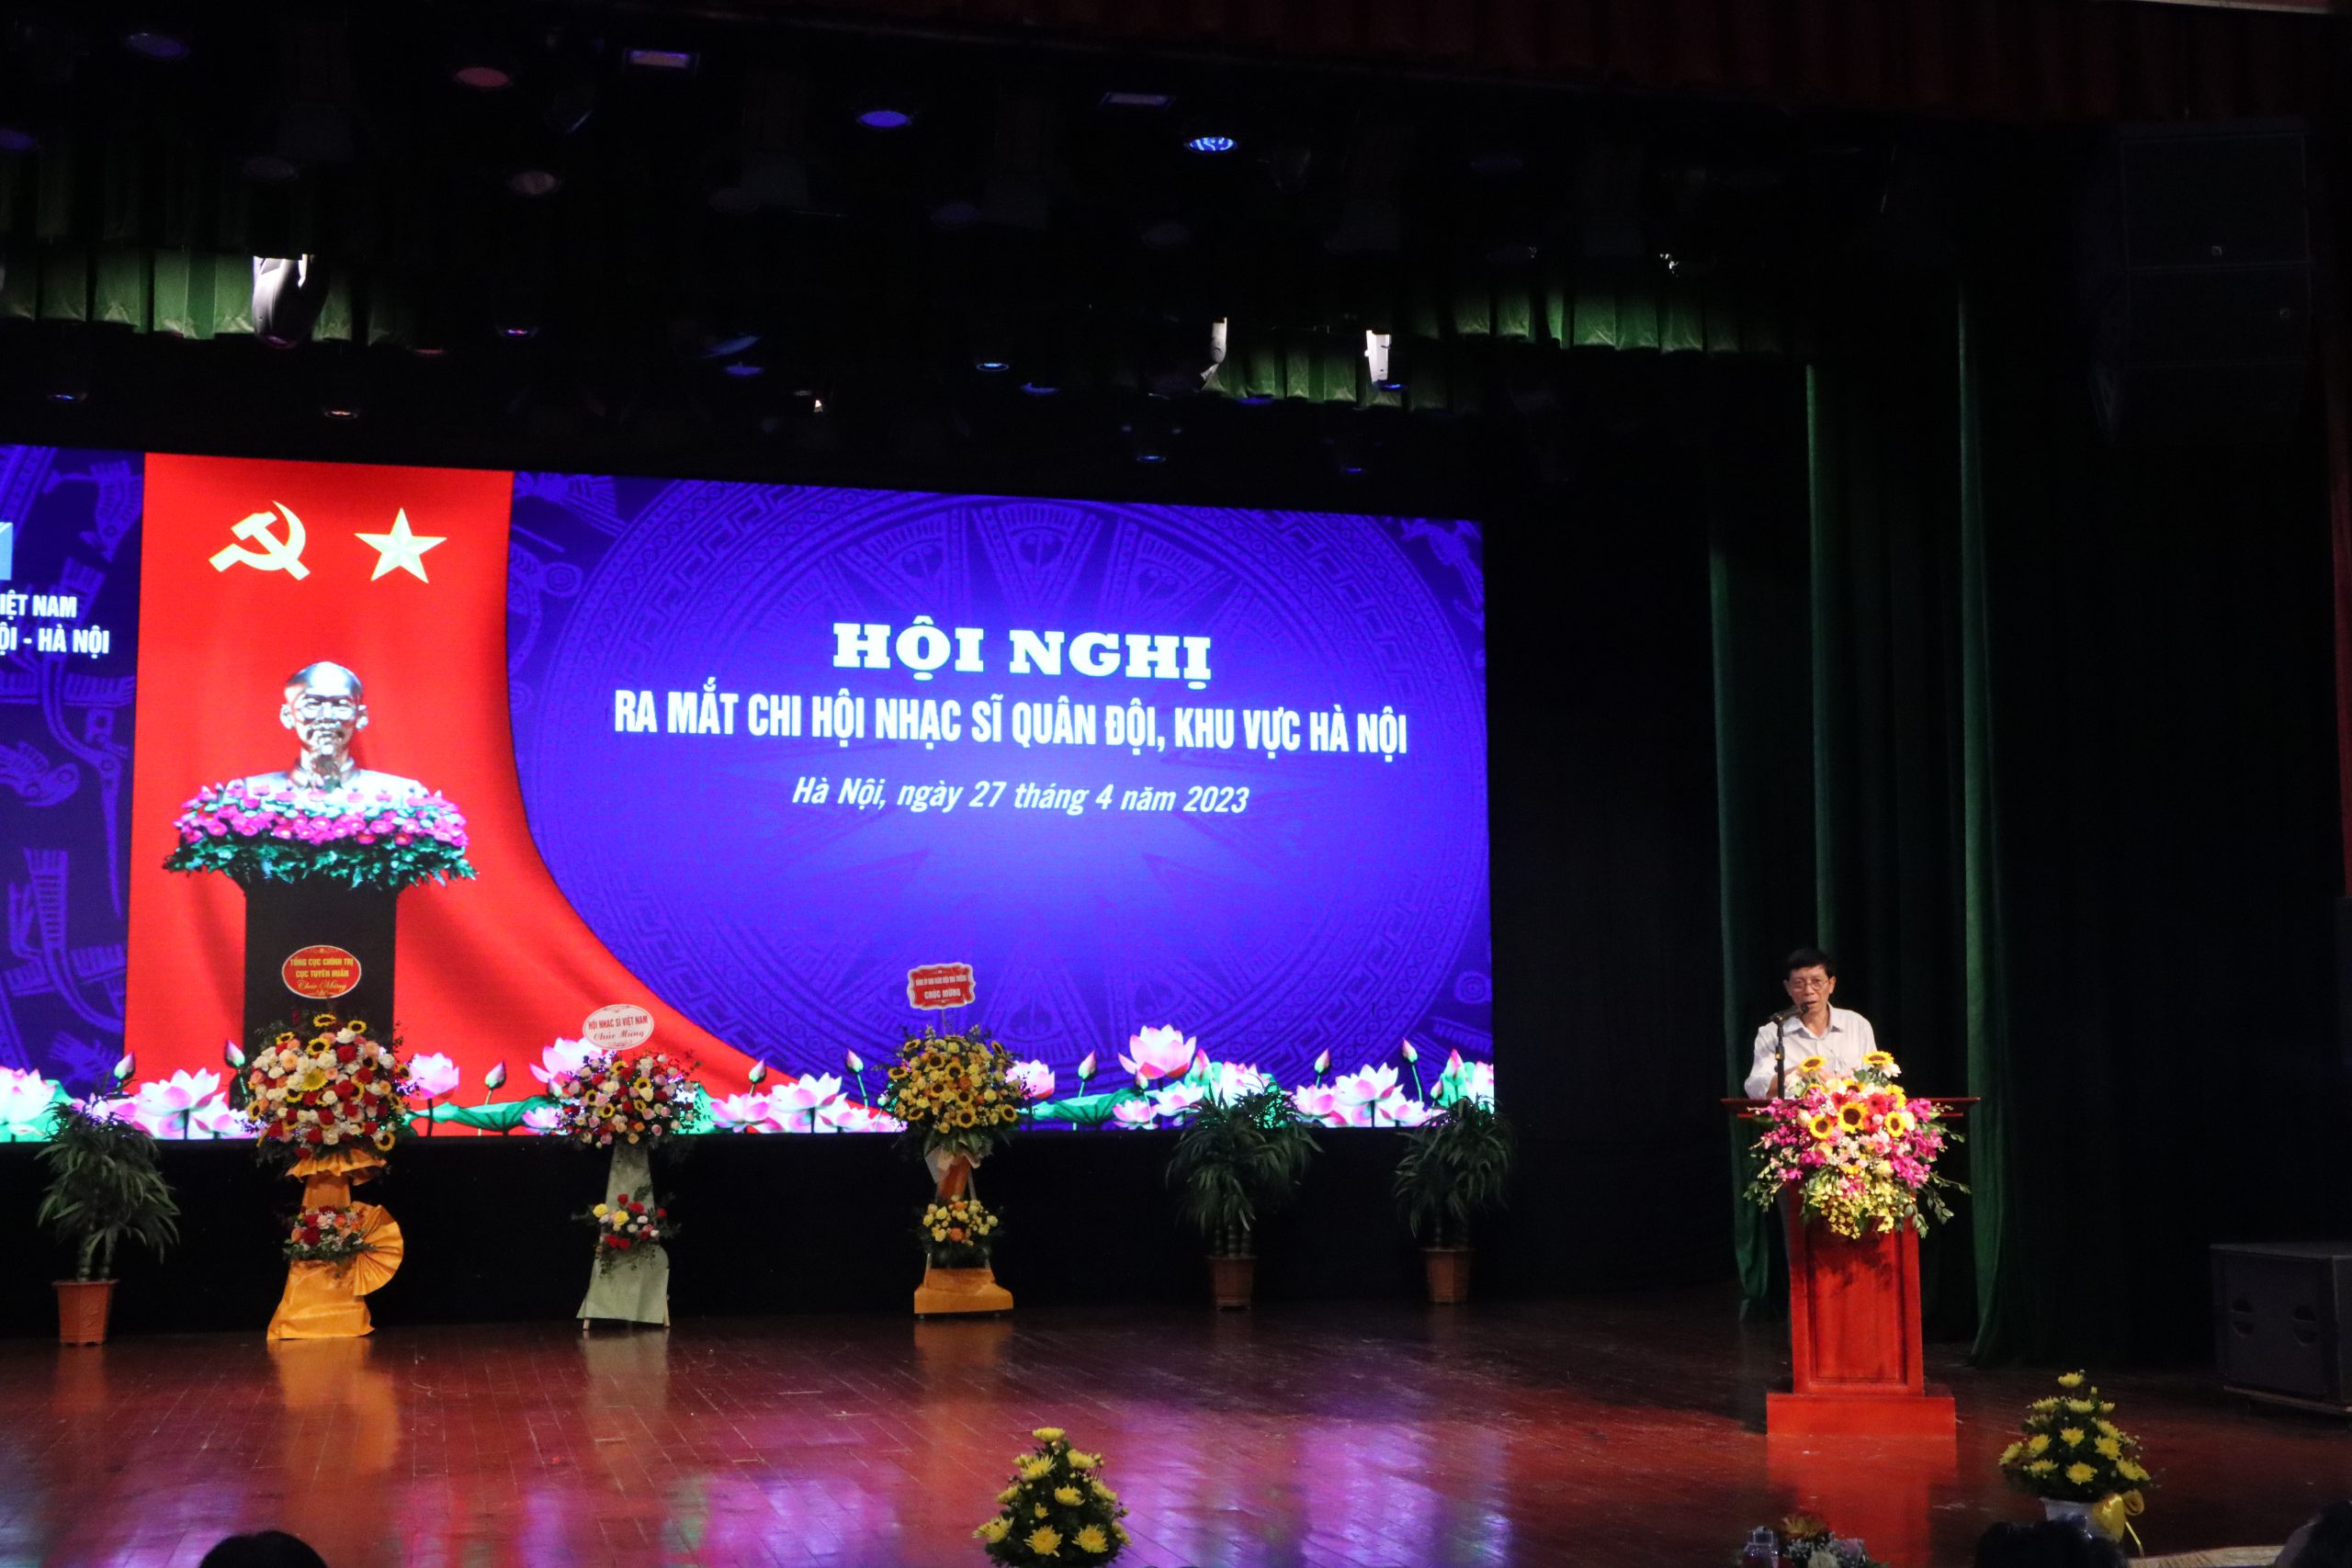 Chùm ảnh: Ra mắt Chi hội Nhạc sĩ Quân đội – khu vực Hà Nội